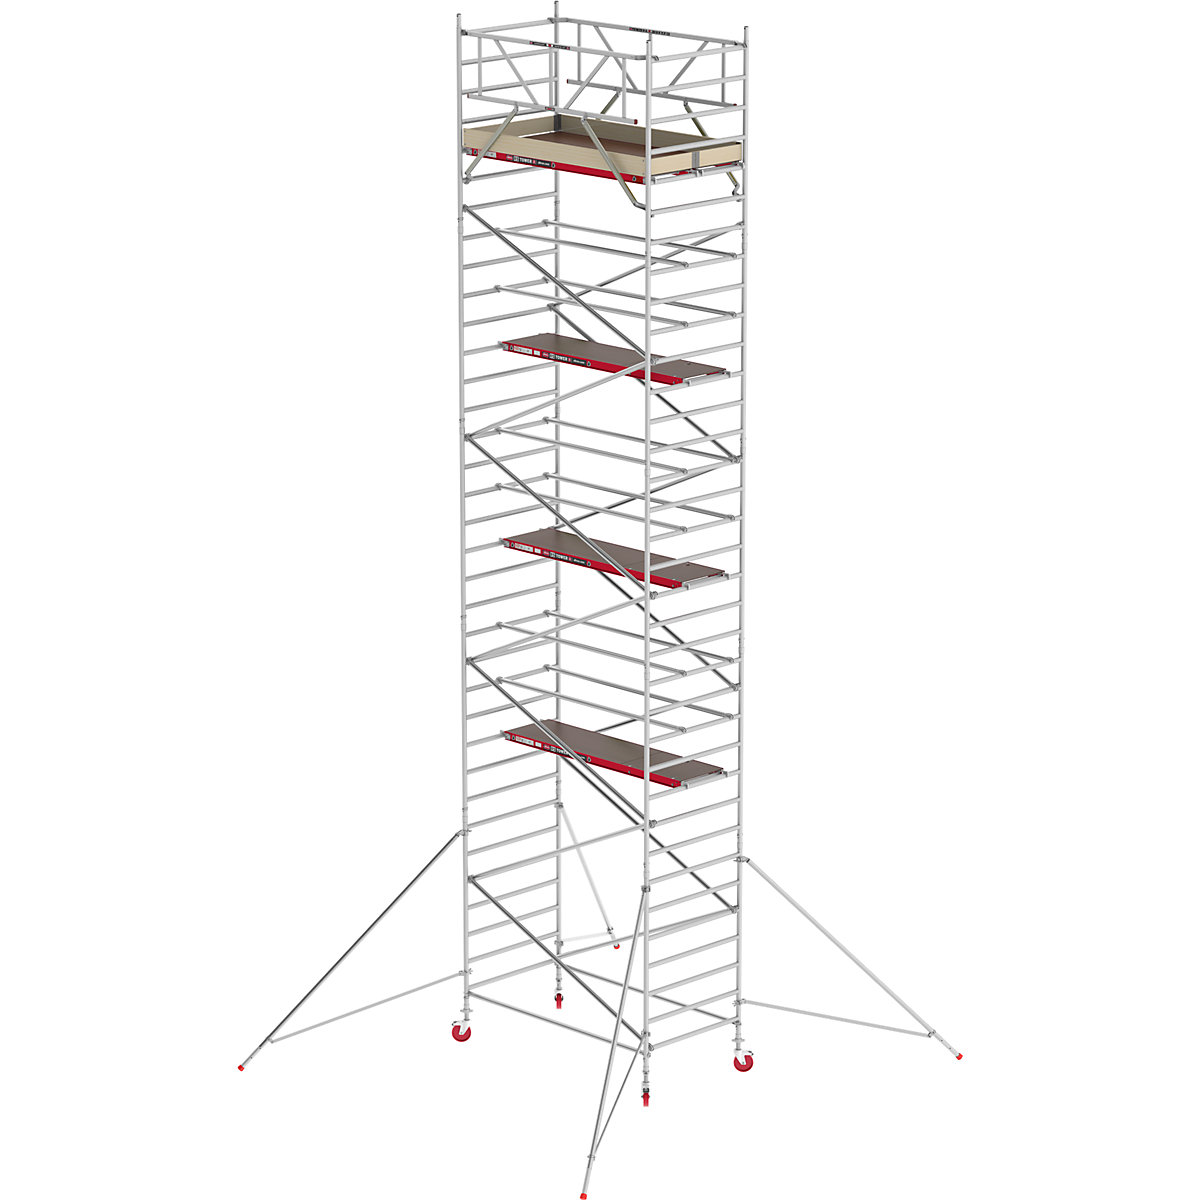 Trabattello mobile RS TOWER 42 largo – Altrex, piattaforma in legno, lunghezza 2,45 m, altezza di lavoro 11,20 m-7